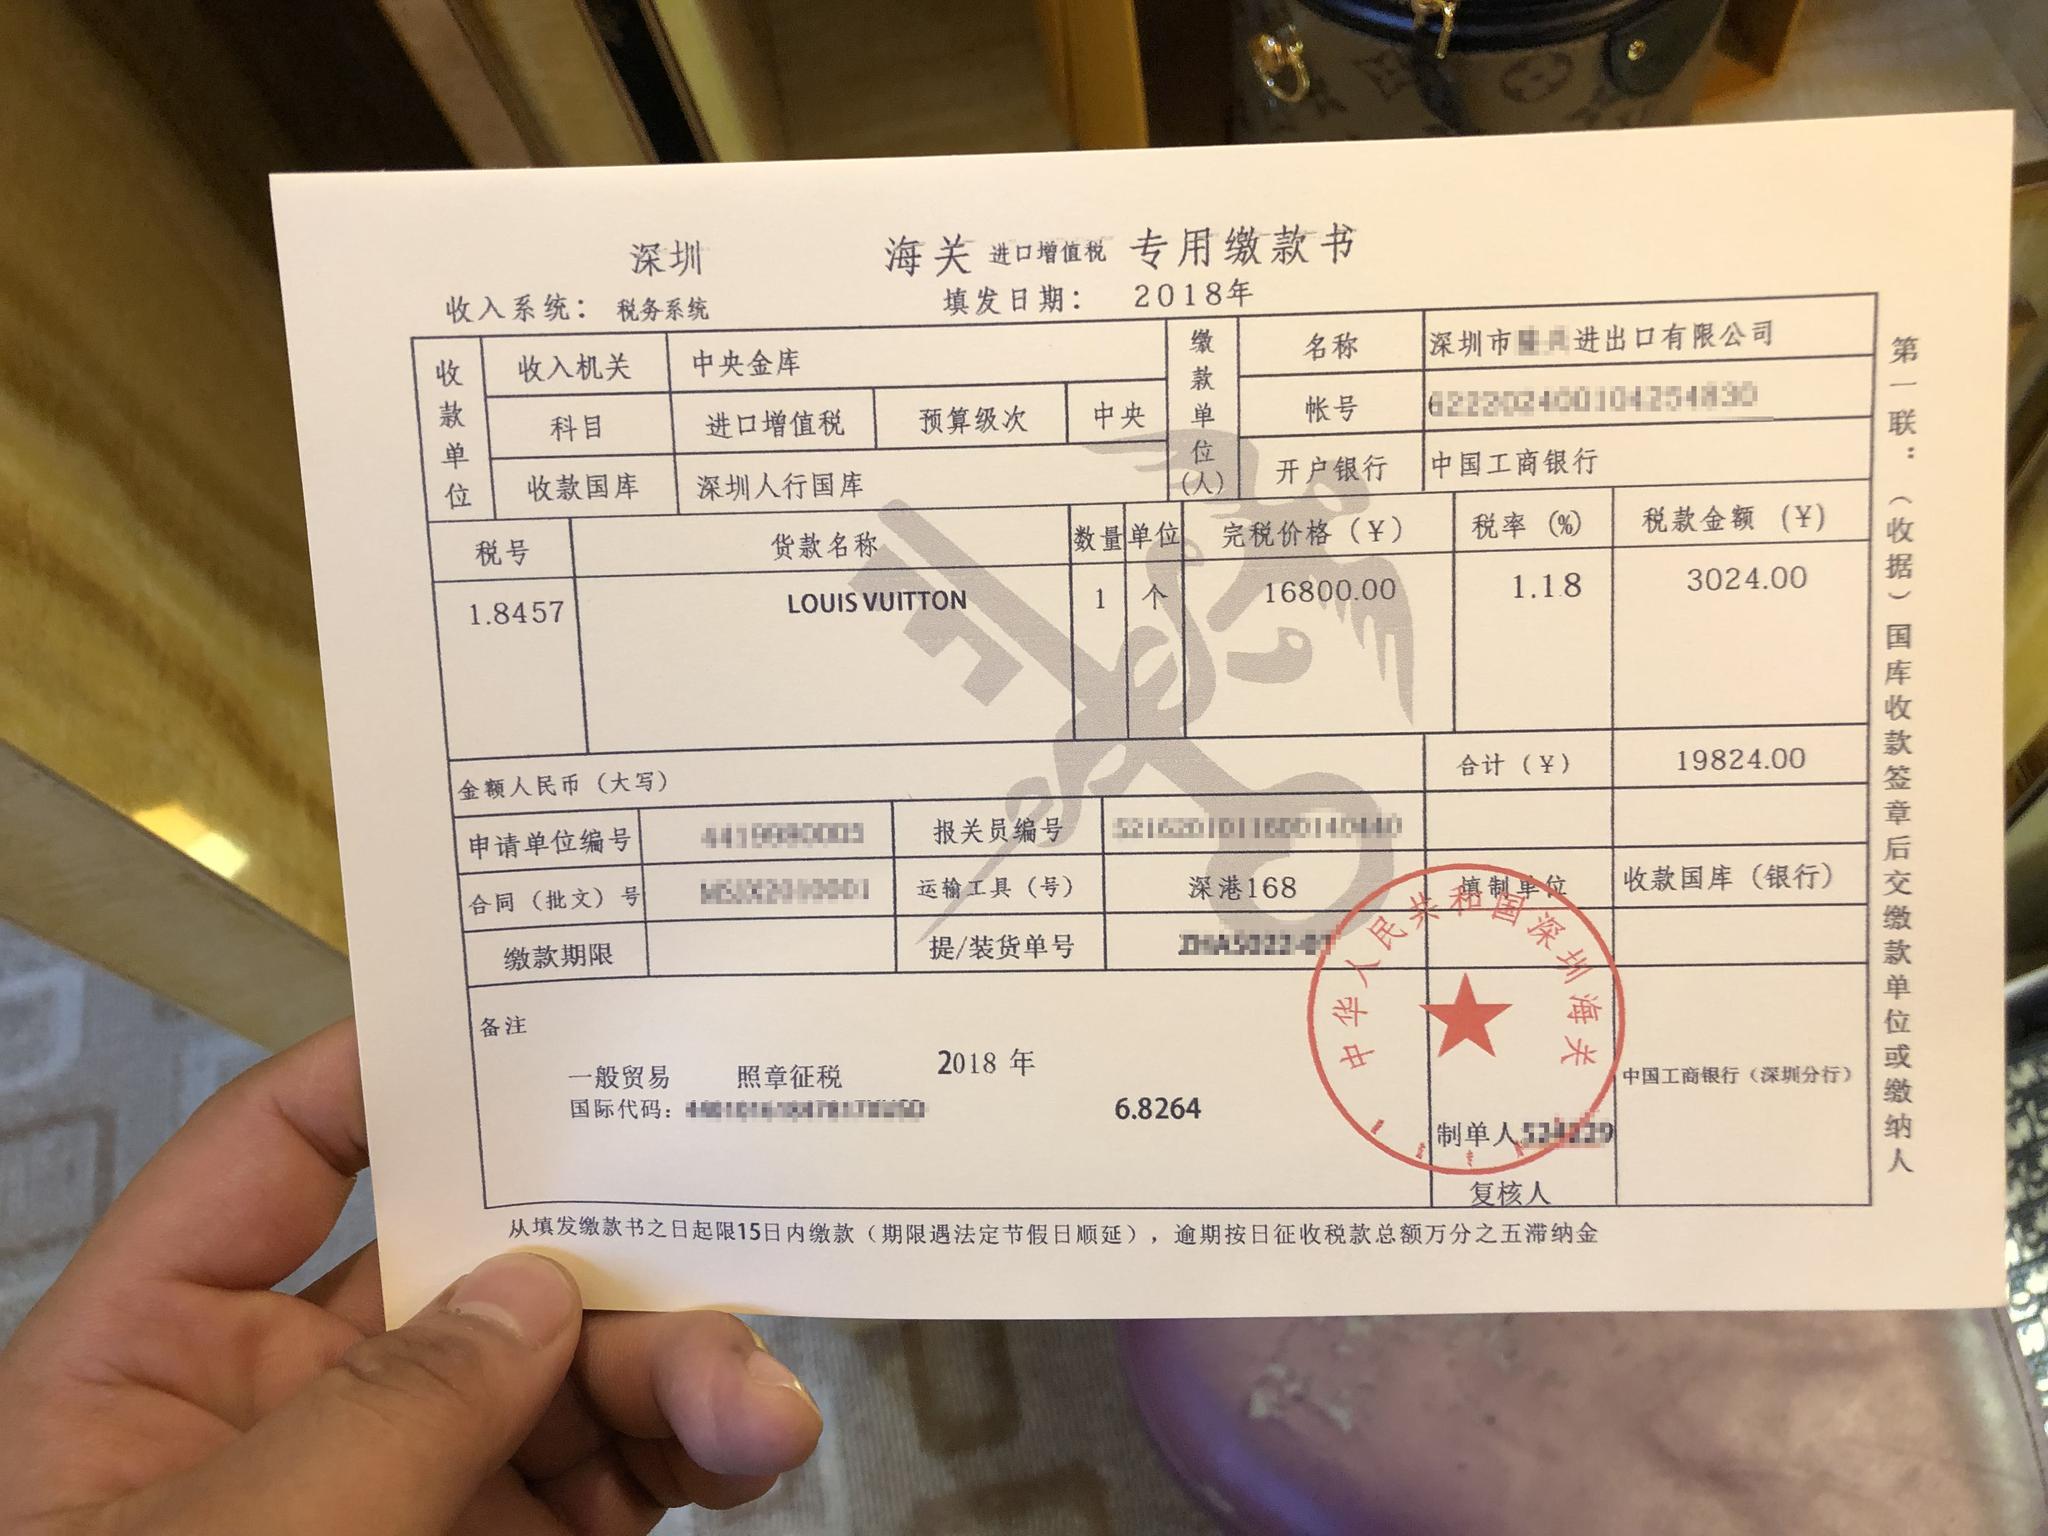 3月15日上午，广州市白云世界皮具贸易中心七层。售假窝点的老板给记者展示一张“海关进口增值税专用缴款书”，并告诉记者这是假冒的单据。 新京报记者 吴江 摄